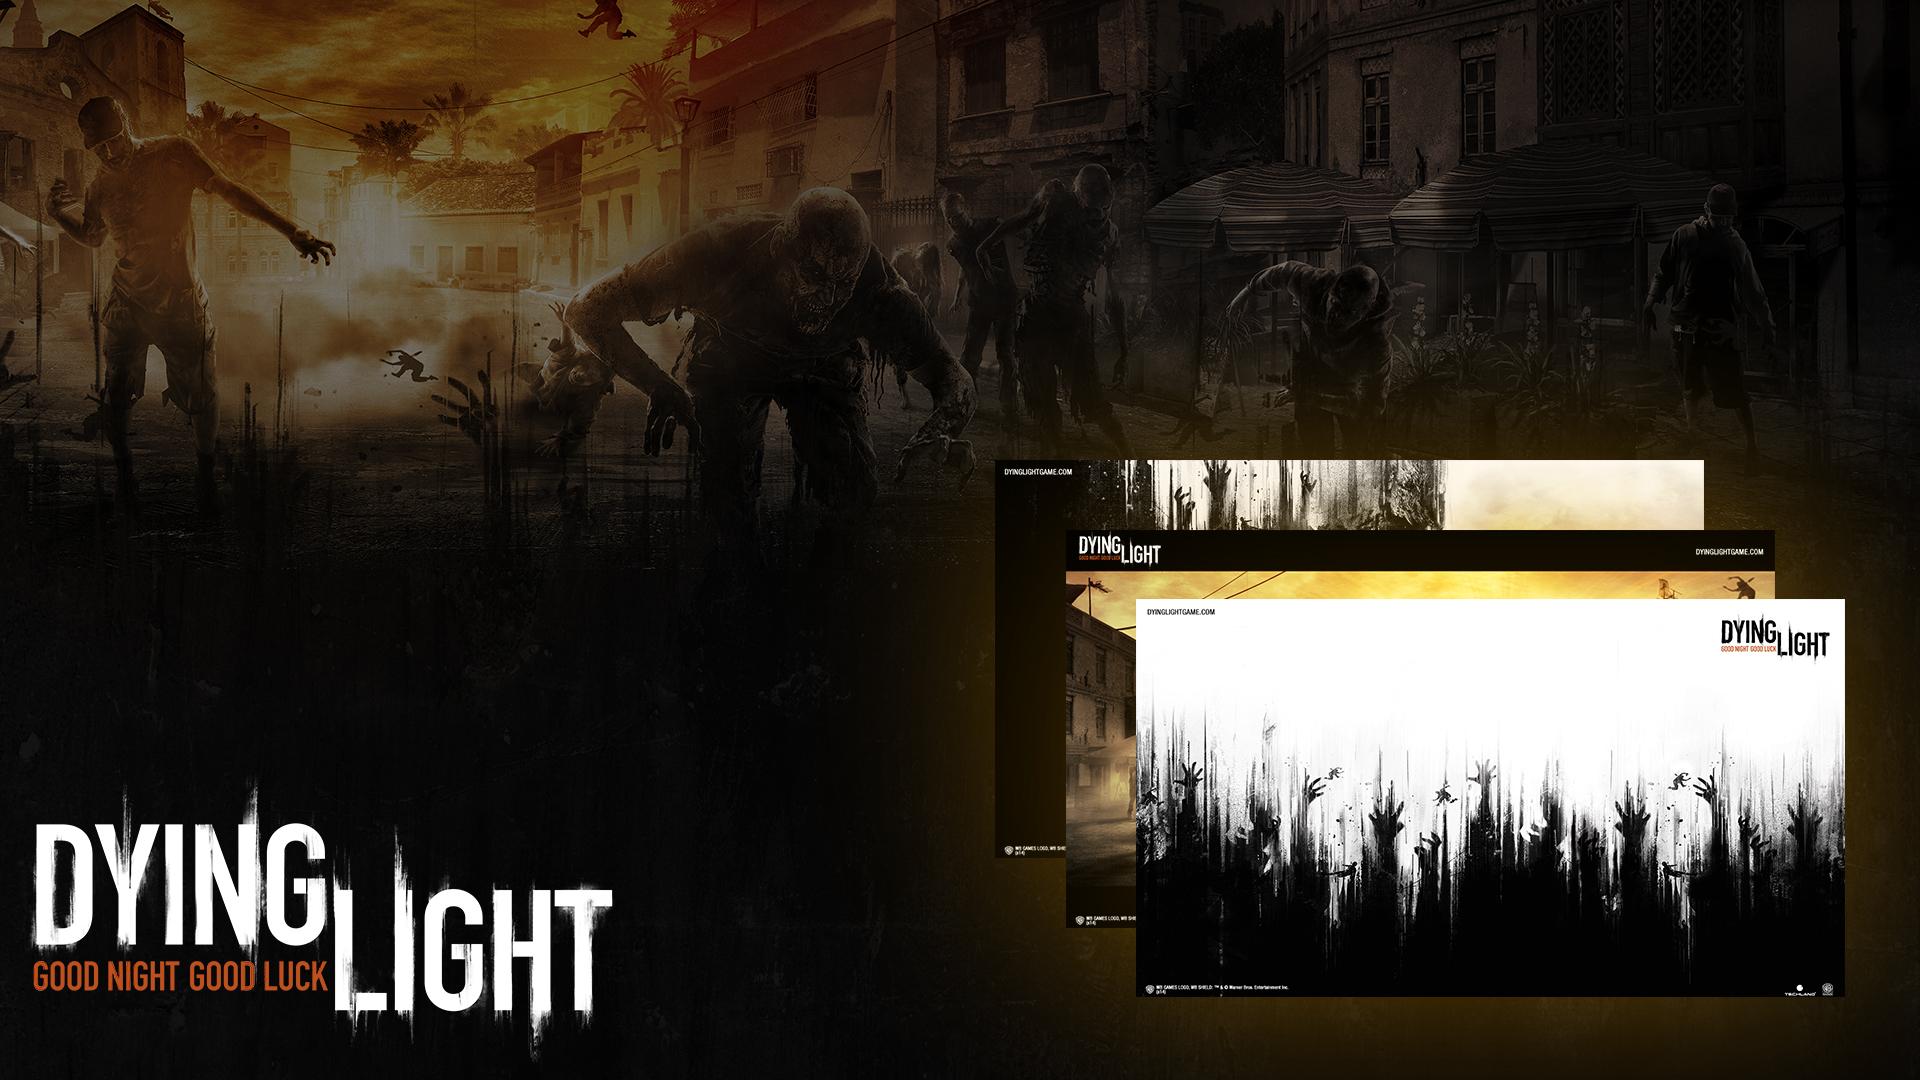 Vai jogar Dying Light 2 no PC? Veja requisitos de sistema